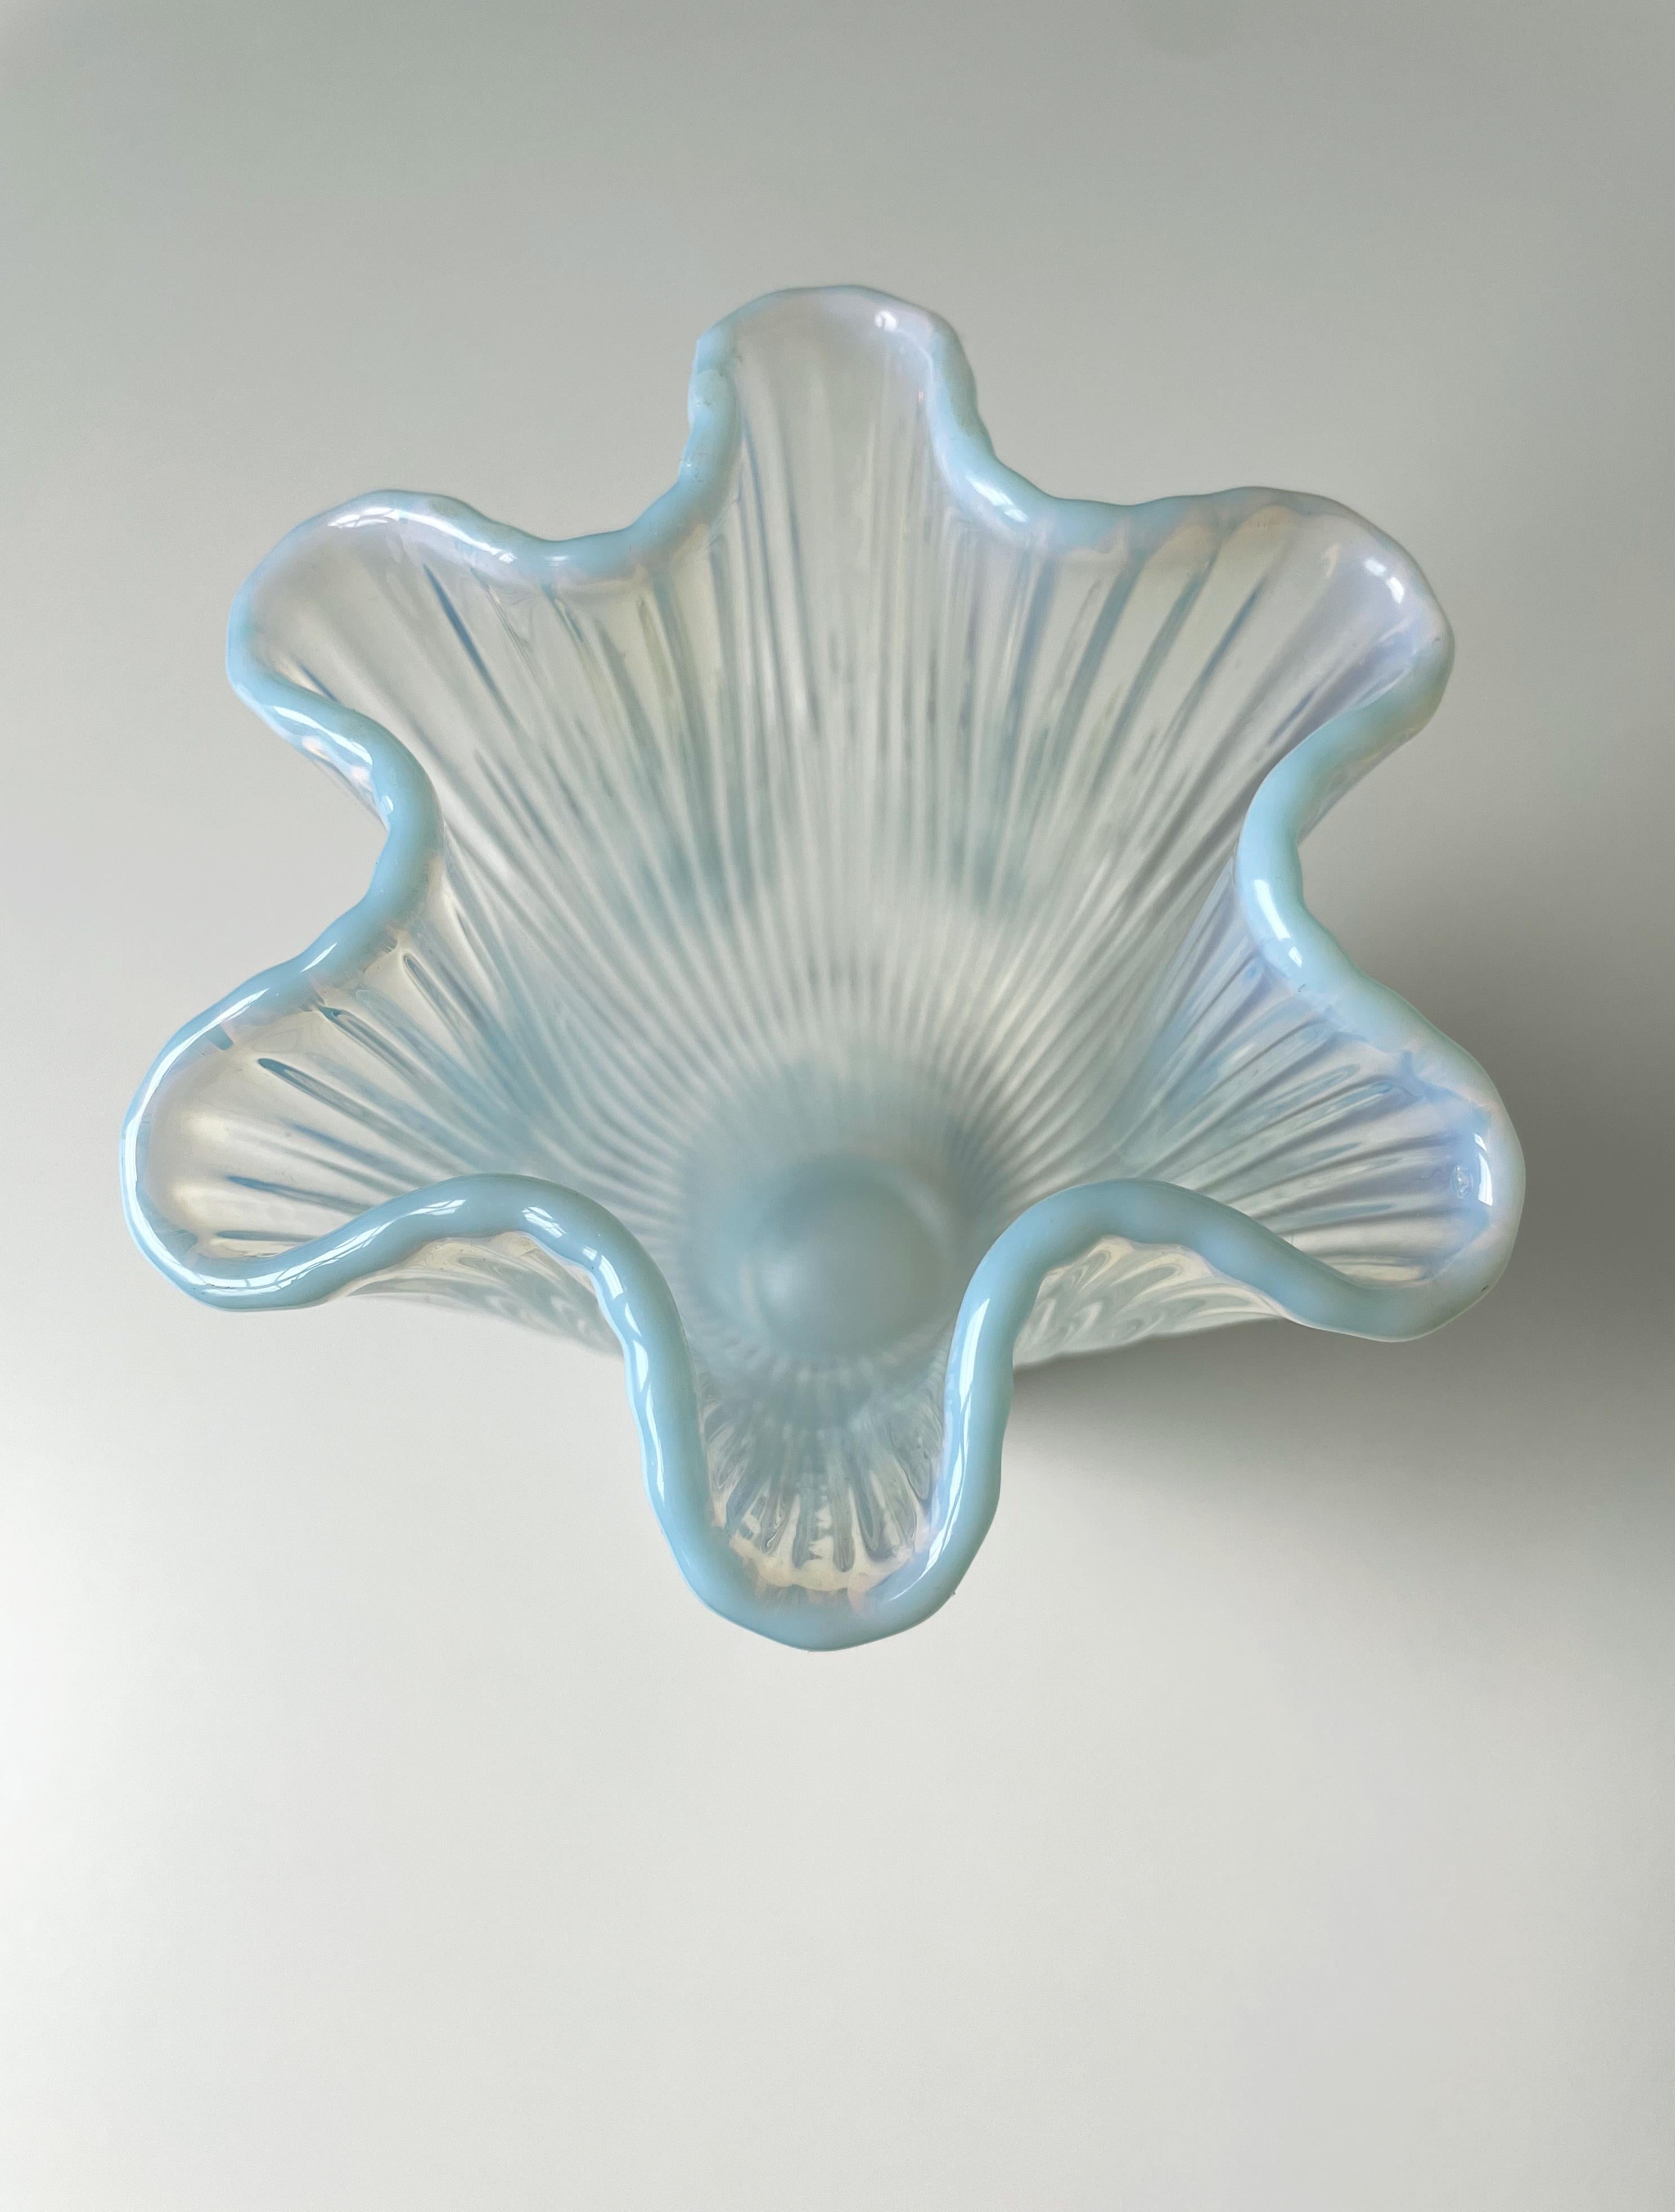 Vase en verre d'art suédois délicat et exquis soufflé à la bouche, conçu par Arthur Percy pour Gullaskrufs Glasbruk en 1952. Le verre blanc et bleu clair opalescent constitue ce vase gracieux qui porte le nom de Reffla (suédois pour les rainures) -